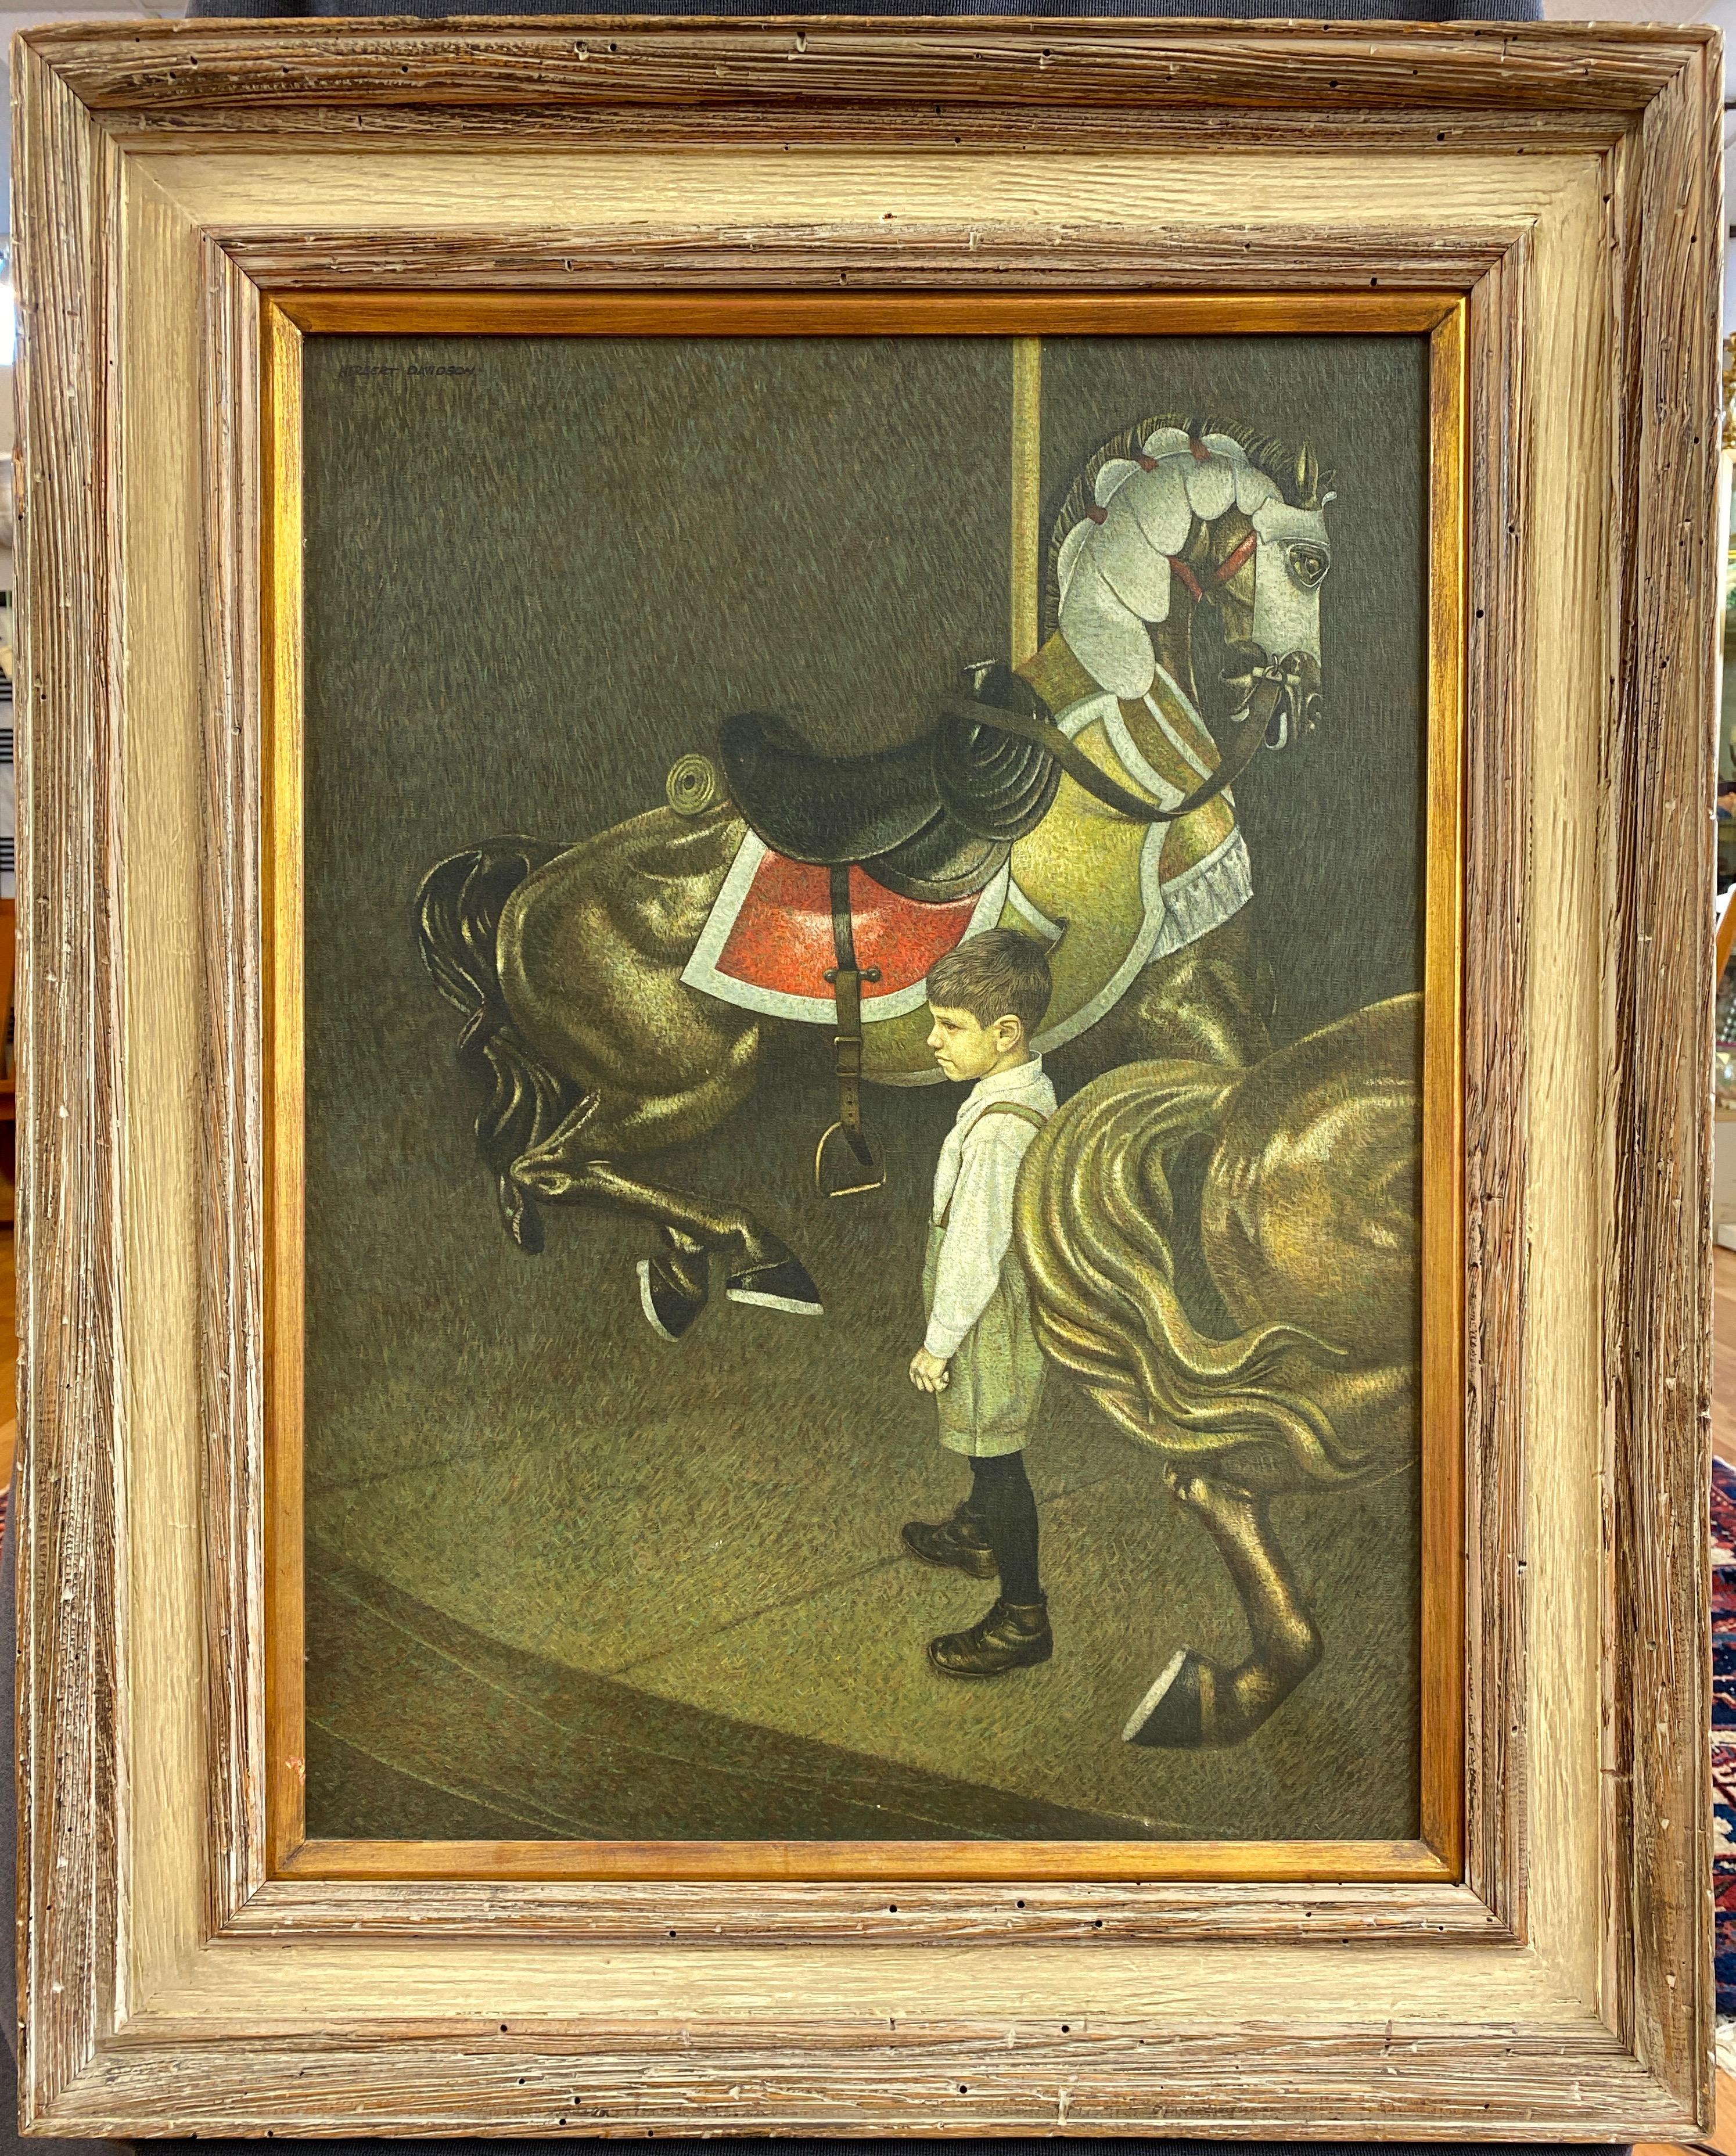 Une poignante peinture à l'huile sur toile des années 1960 représentant un jeune garçon sur un carrousel stationnaire par l'important artiste américain du milieu du siècle Herbert Laurence Davidson (né en 1930-2018).

Un portrait sensible